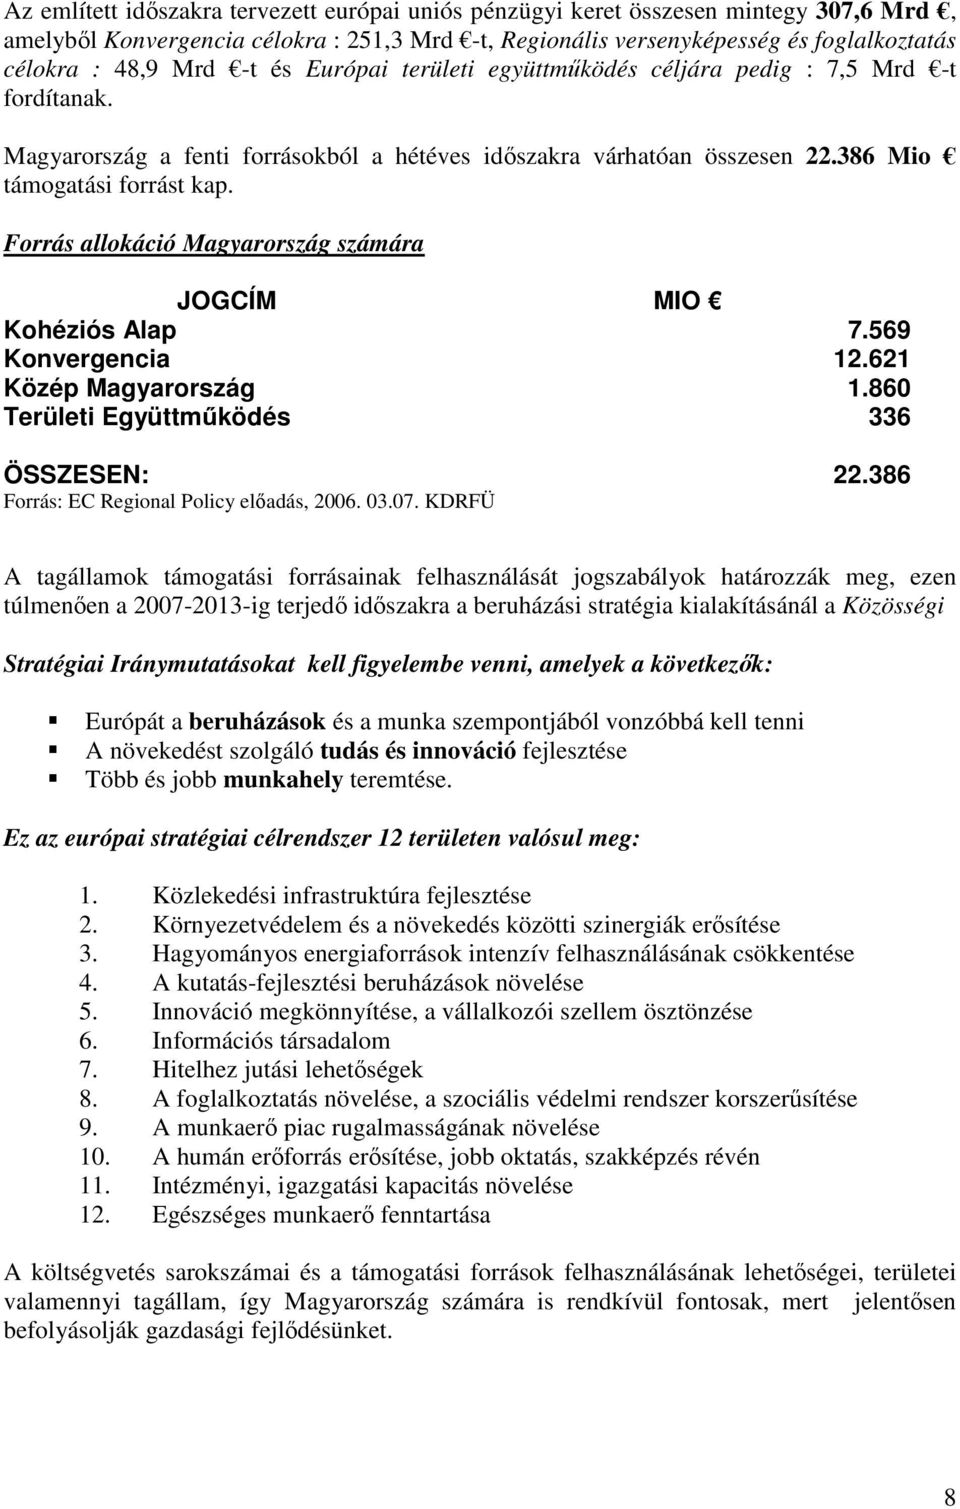 Forrás allokáció Magyarország számára JOGCÍM MIO Kohéziós Alap 7.569 Konvergencia 12.621 Közép Magyarország 1.860 Területi Együttműködés 336 ÖSSZESEN: 22.386 Forrás: EC Regional Policy előadás, 2006.